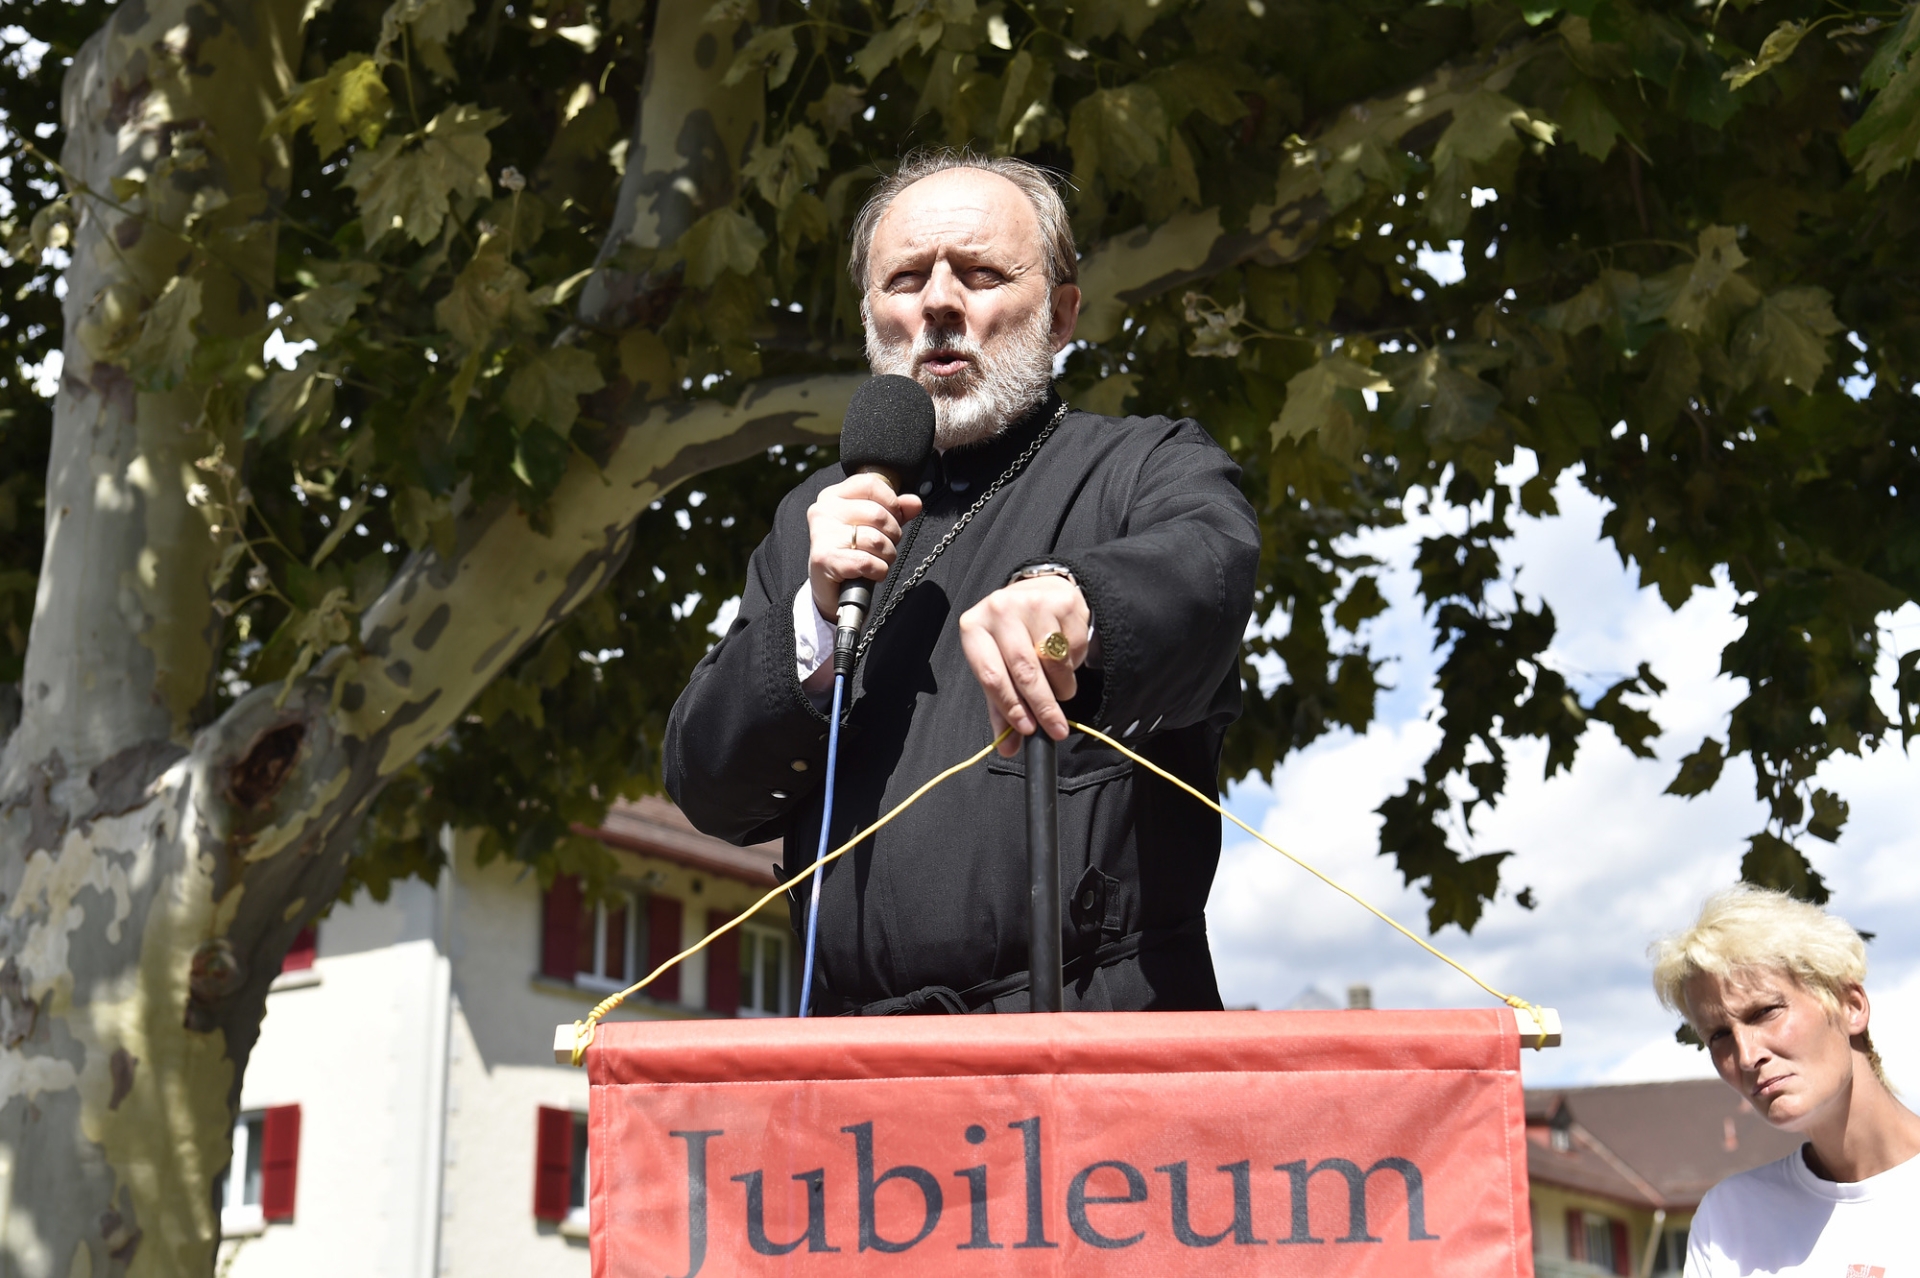 Dimitri Mottier était présent à Brigue, le 28 août dernier, pour manifester contre le Covid-19.  Il prenait la parole en tant que prêtre orthodoxe.